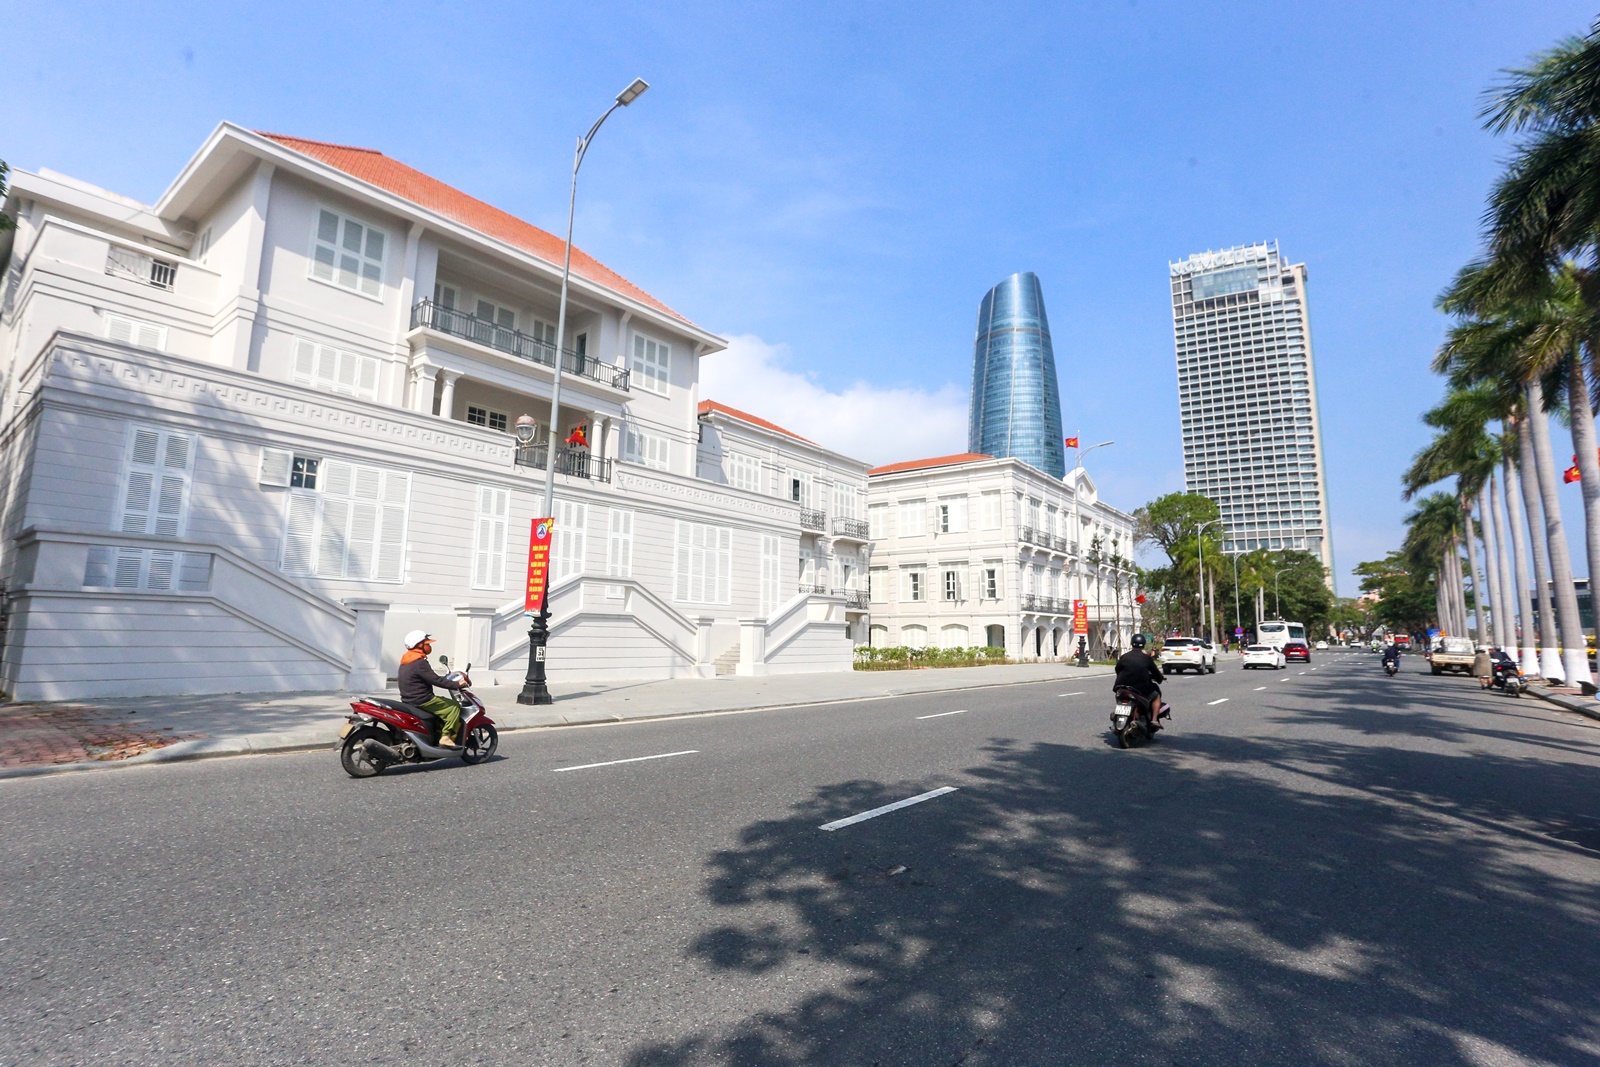 Tòa Đốc lý 120 tuổi ở Đà Nẵng chưa tu bổ xong đã thành điểm check in mới thu hút du khách - Ảnh 1.